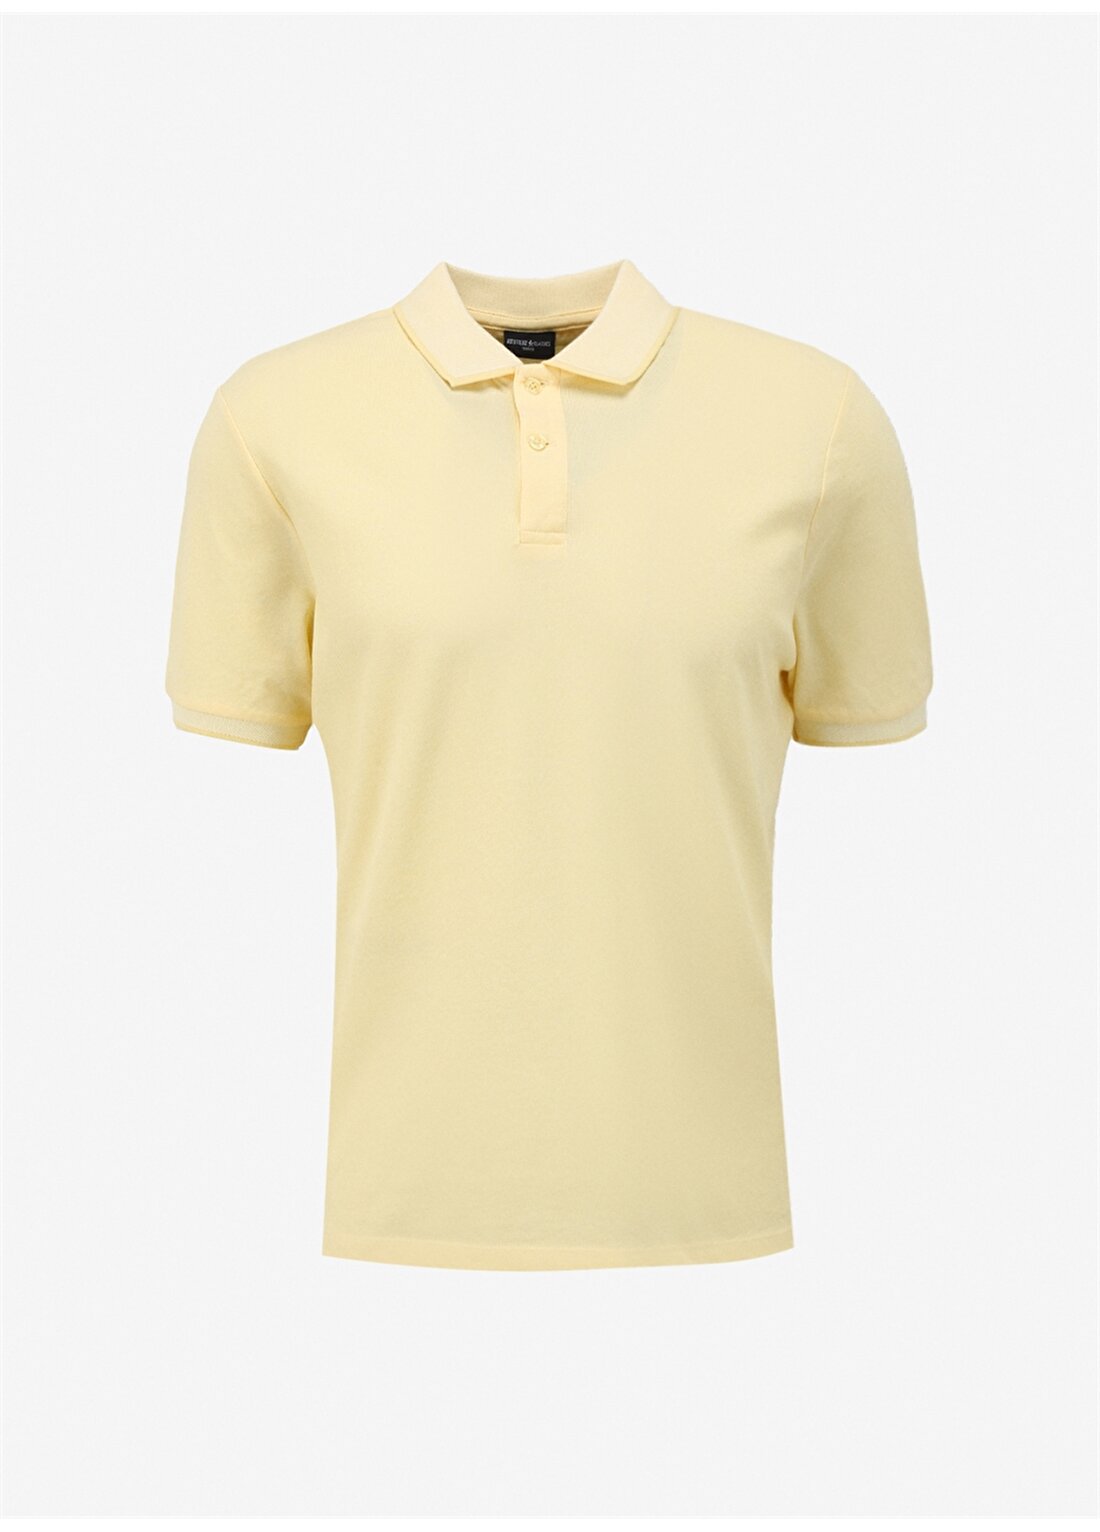 Altınyıldız Classics Kiremit Melanj Erkek Polo T-Shirt 4A9000000003